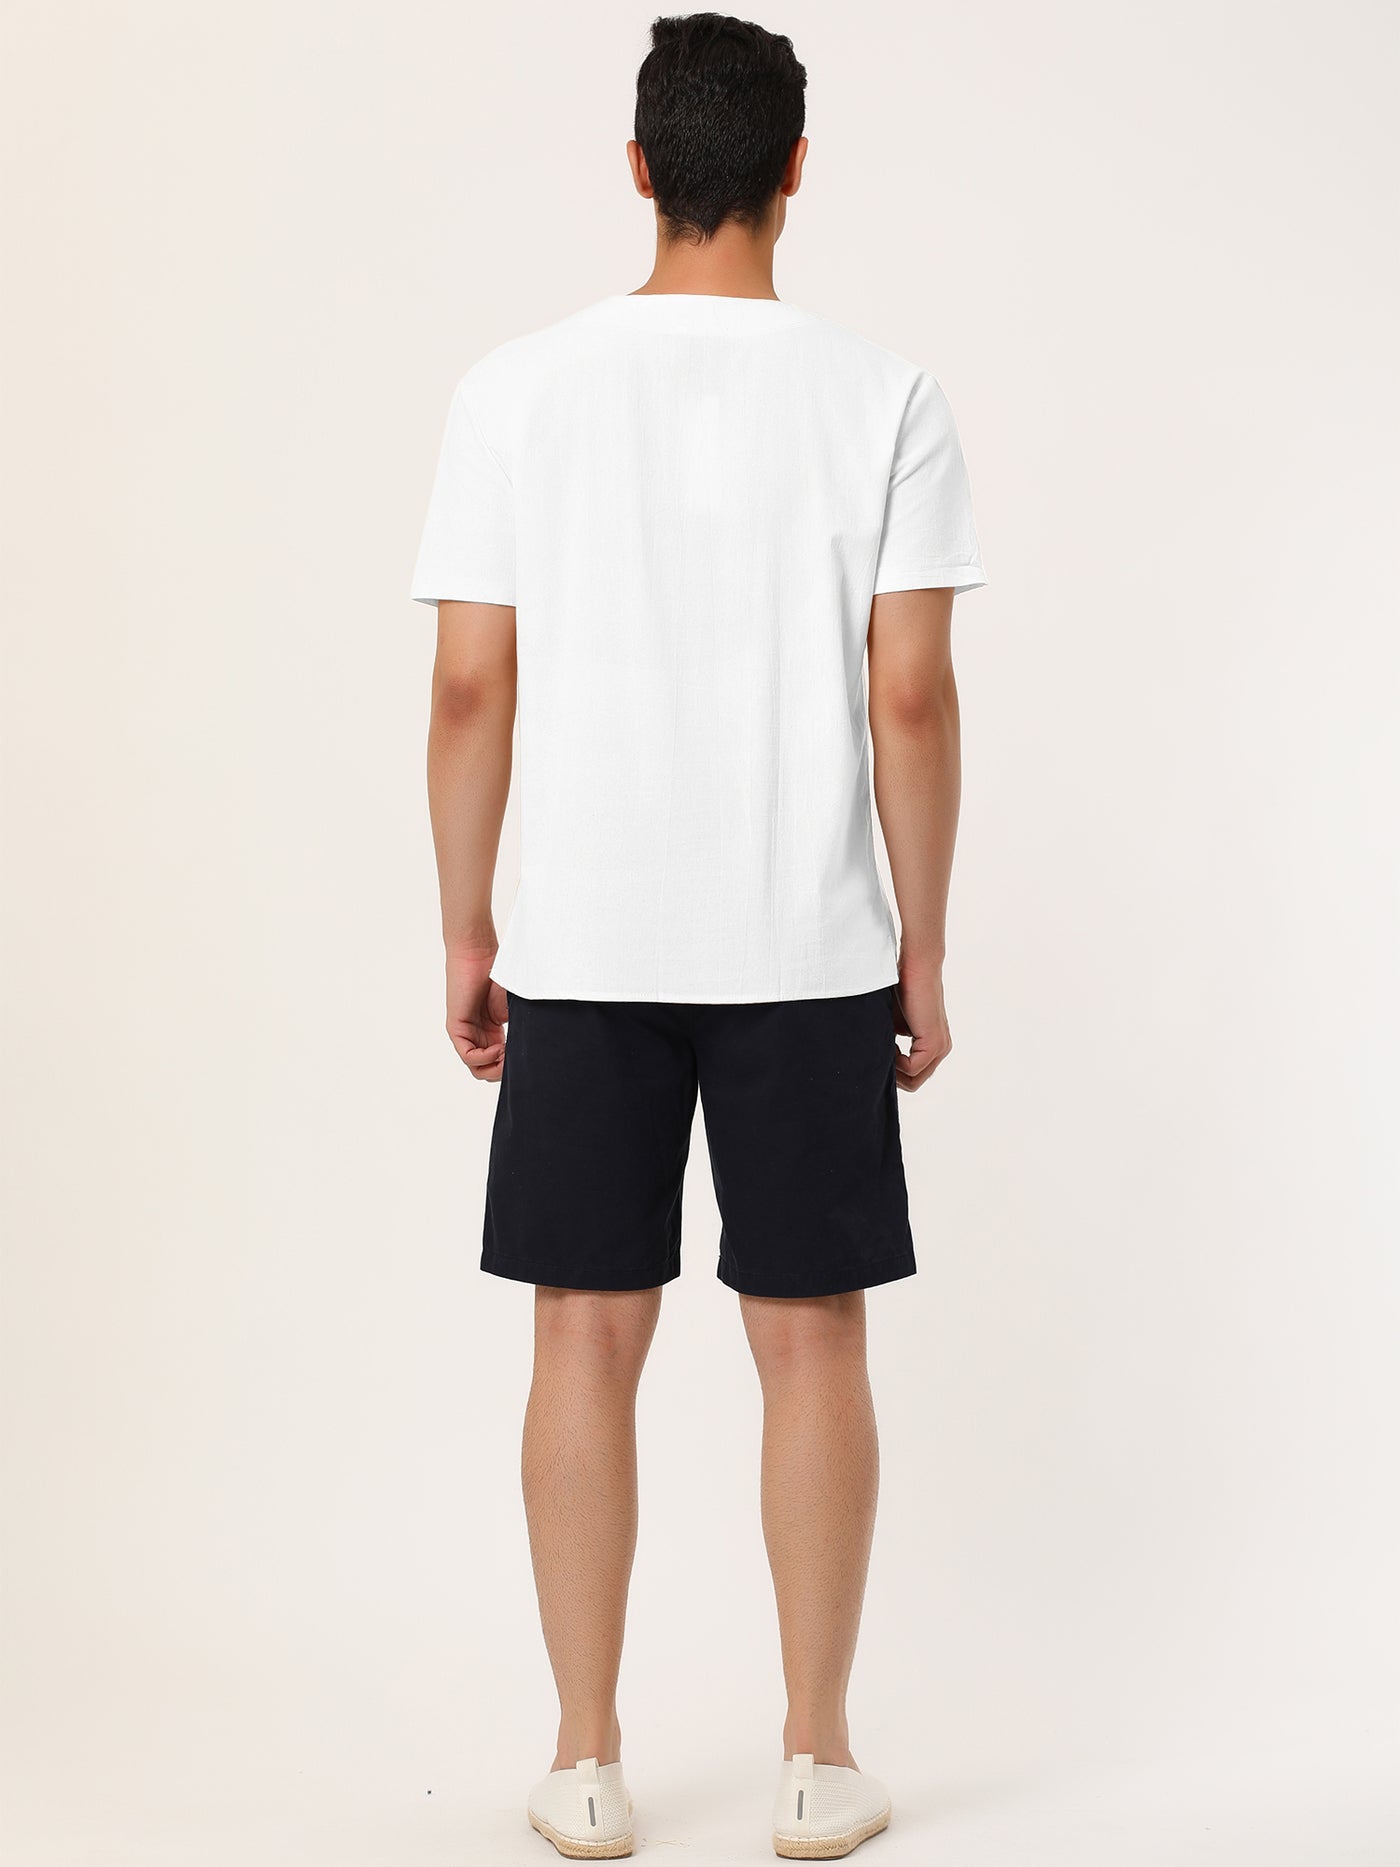 Bublédon Linen V-Neck Lace Up Solid Color Short Sleeve Shirt